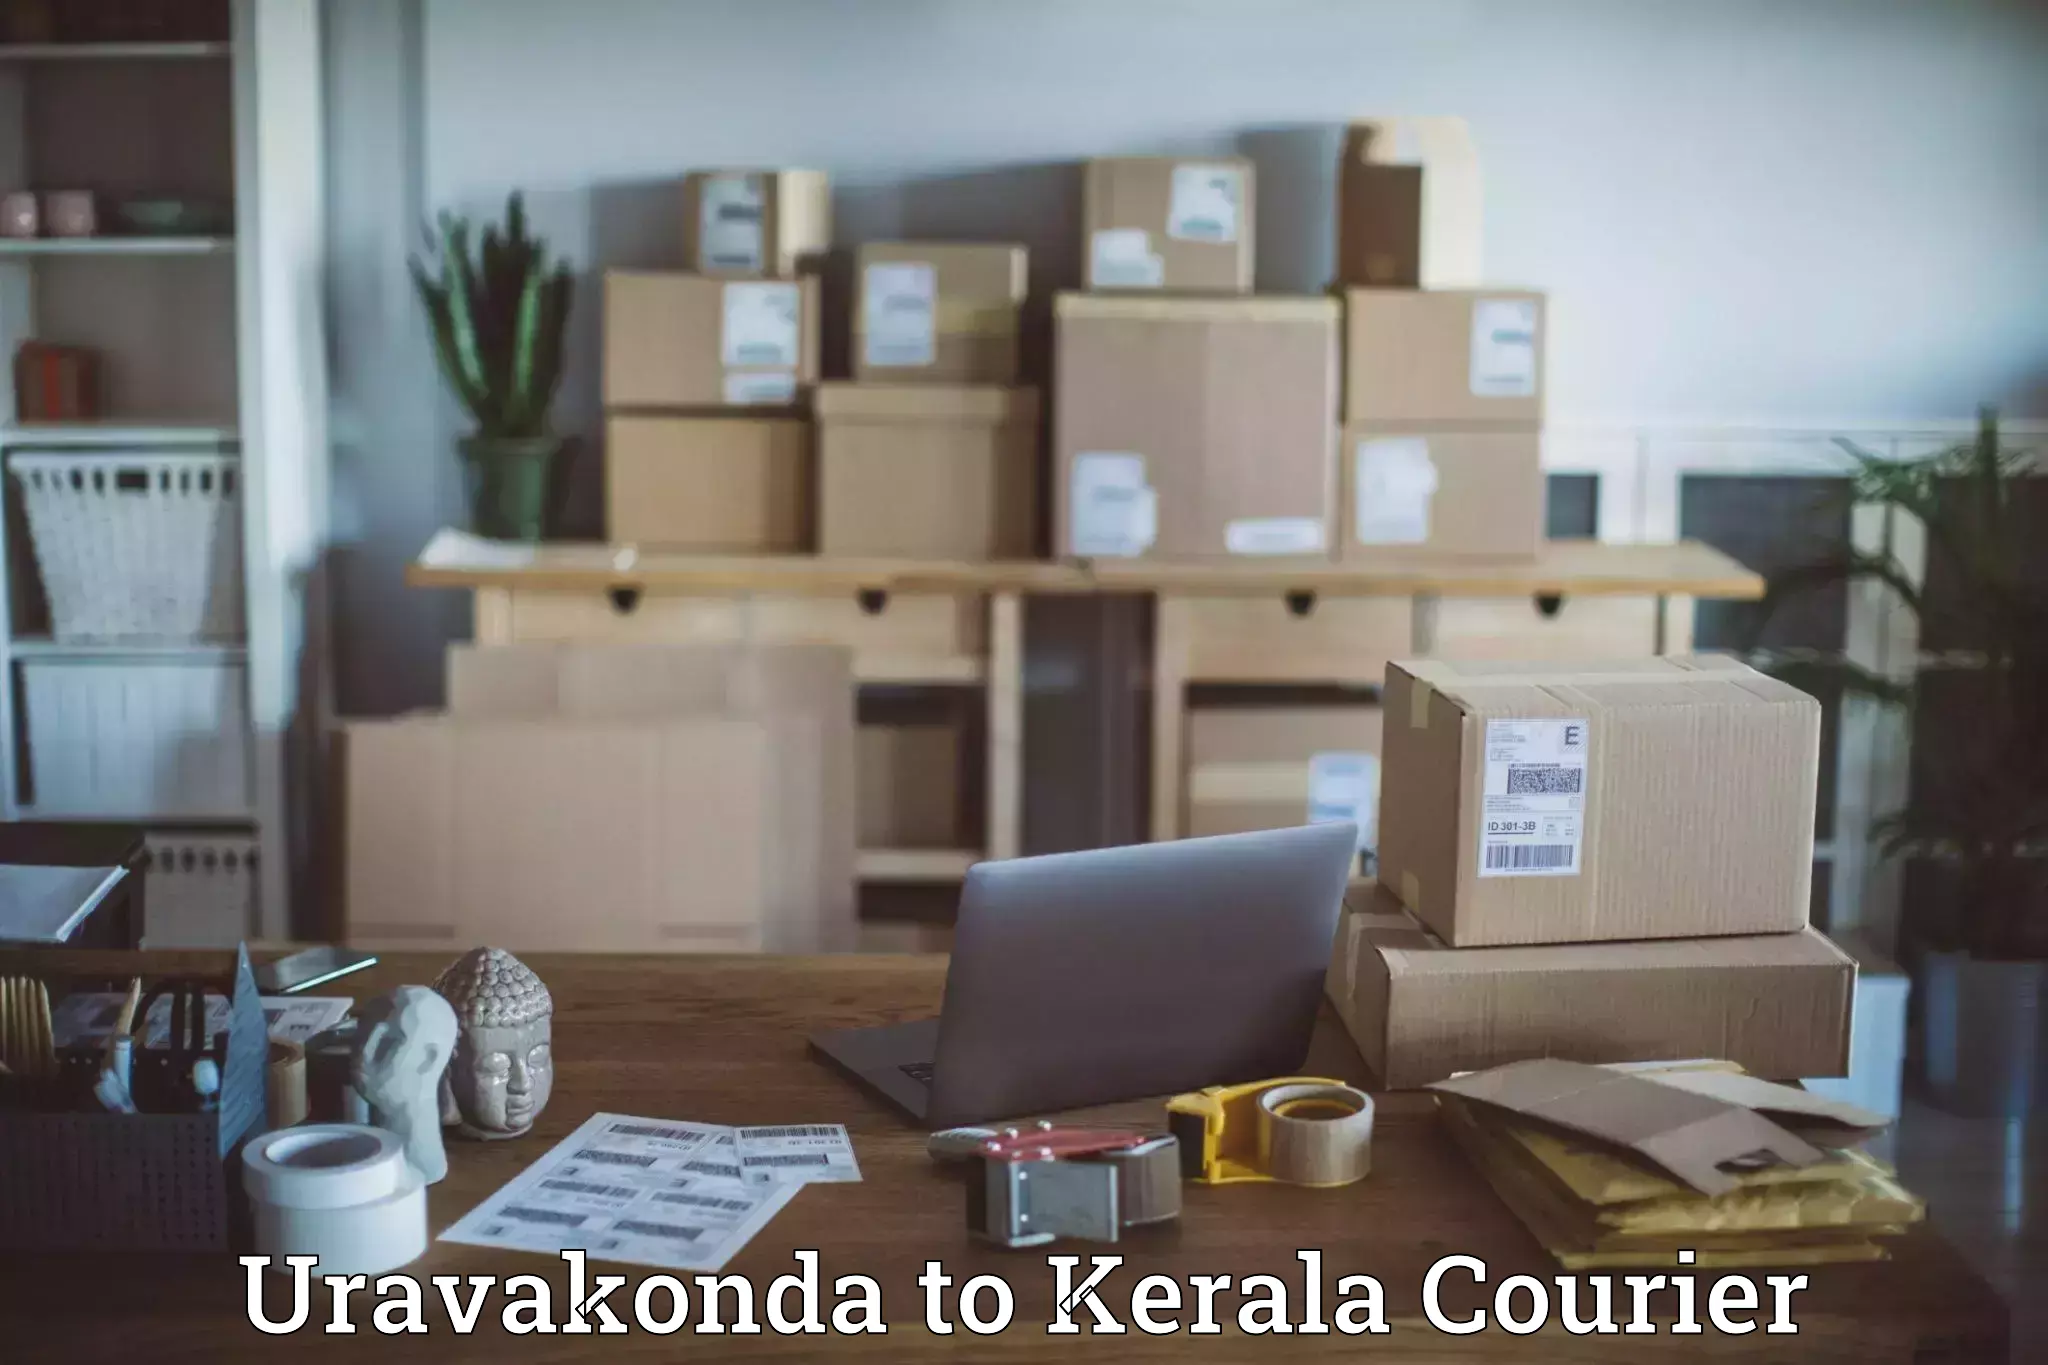 Premium courier solutions Uravakonda to Attingal